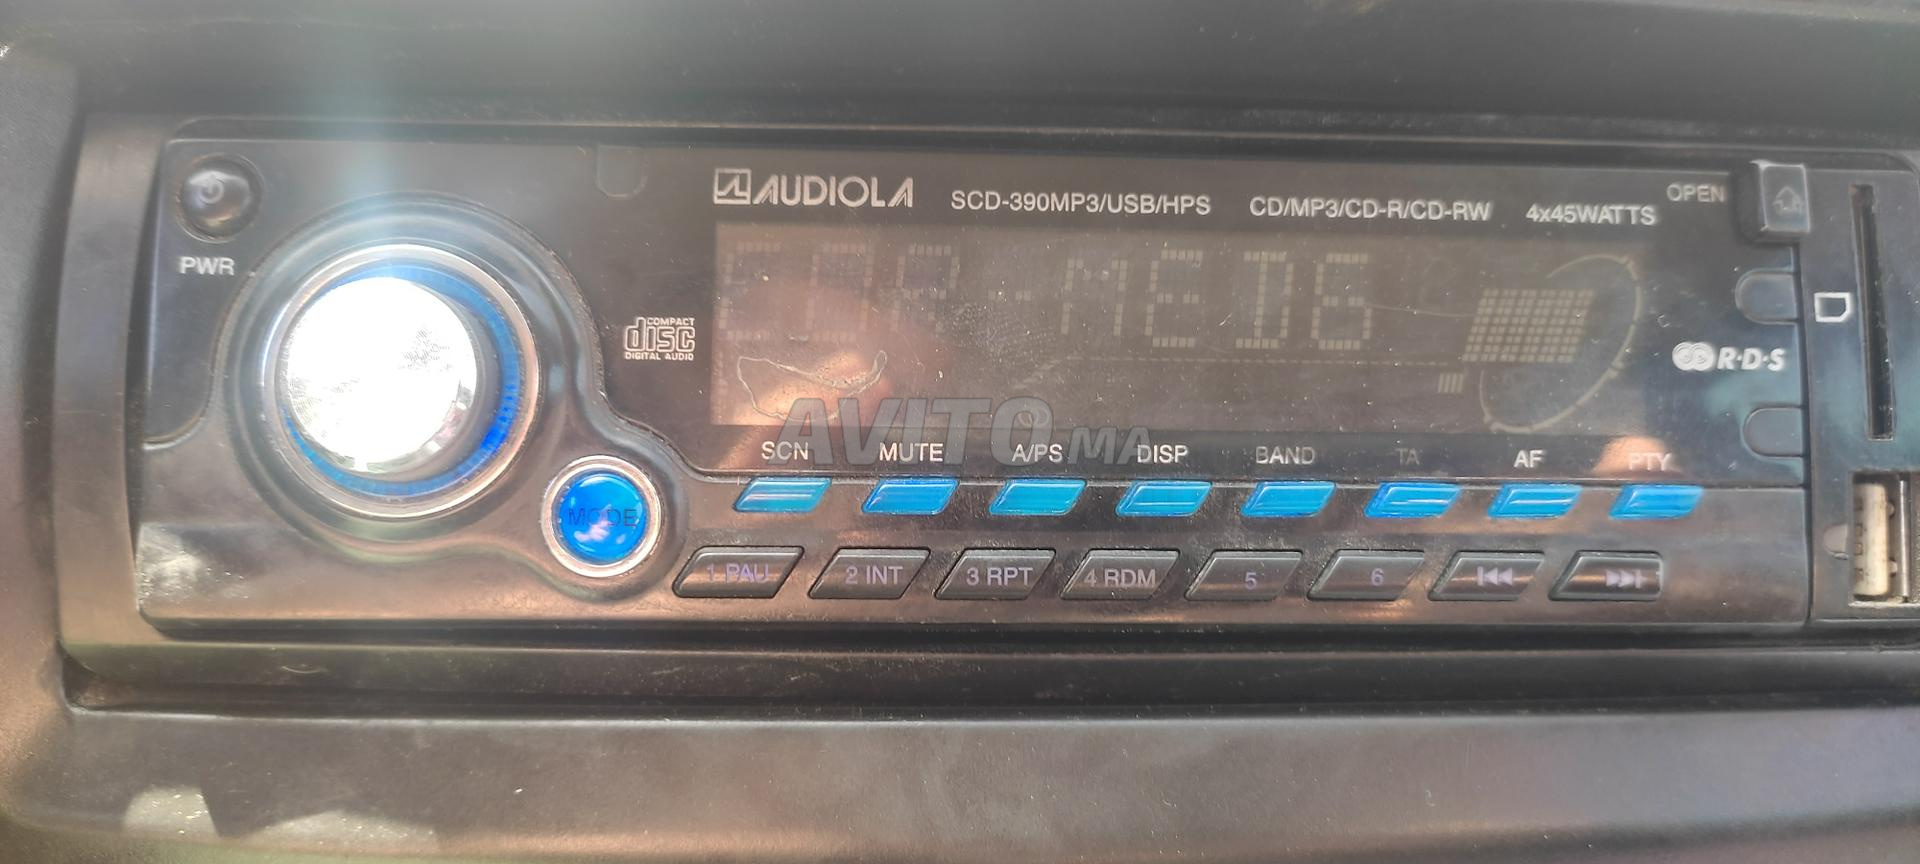 poste radio original AUDIOLA - 2